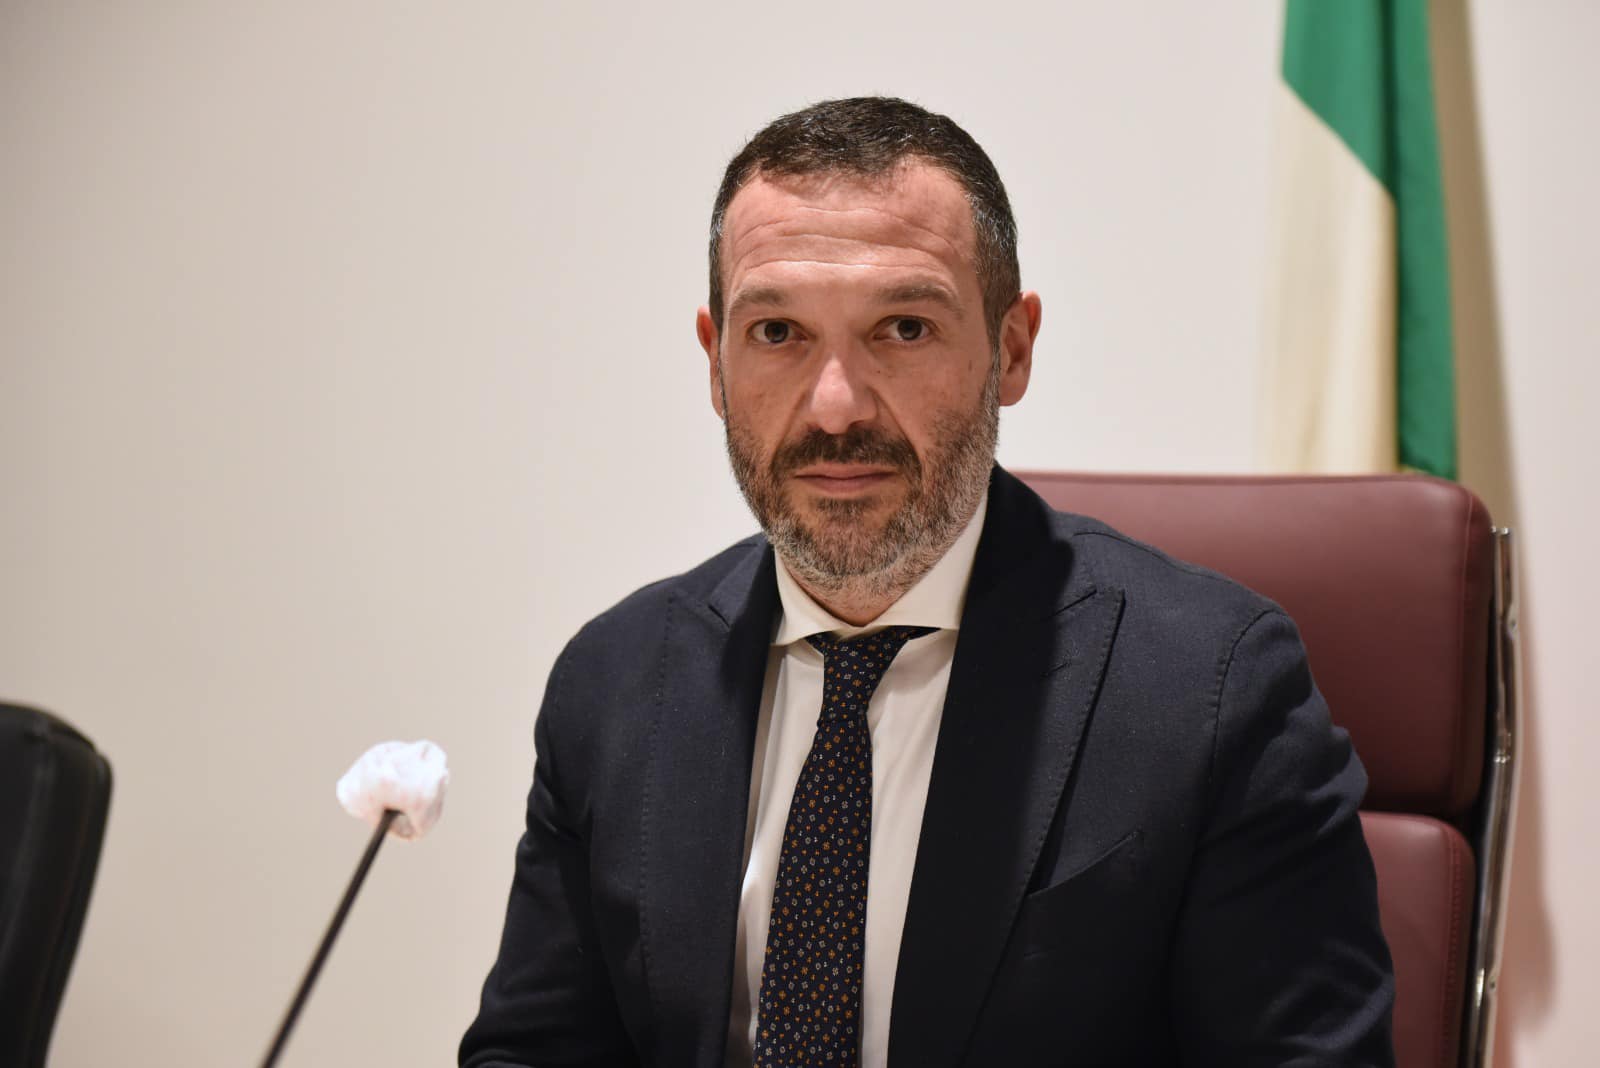 Nuova Pescara: in Commissione bilancio parere positivo per lo slittamento al 2027